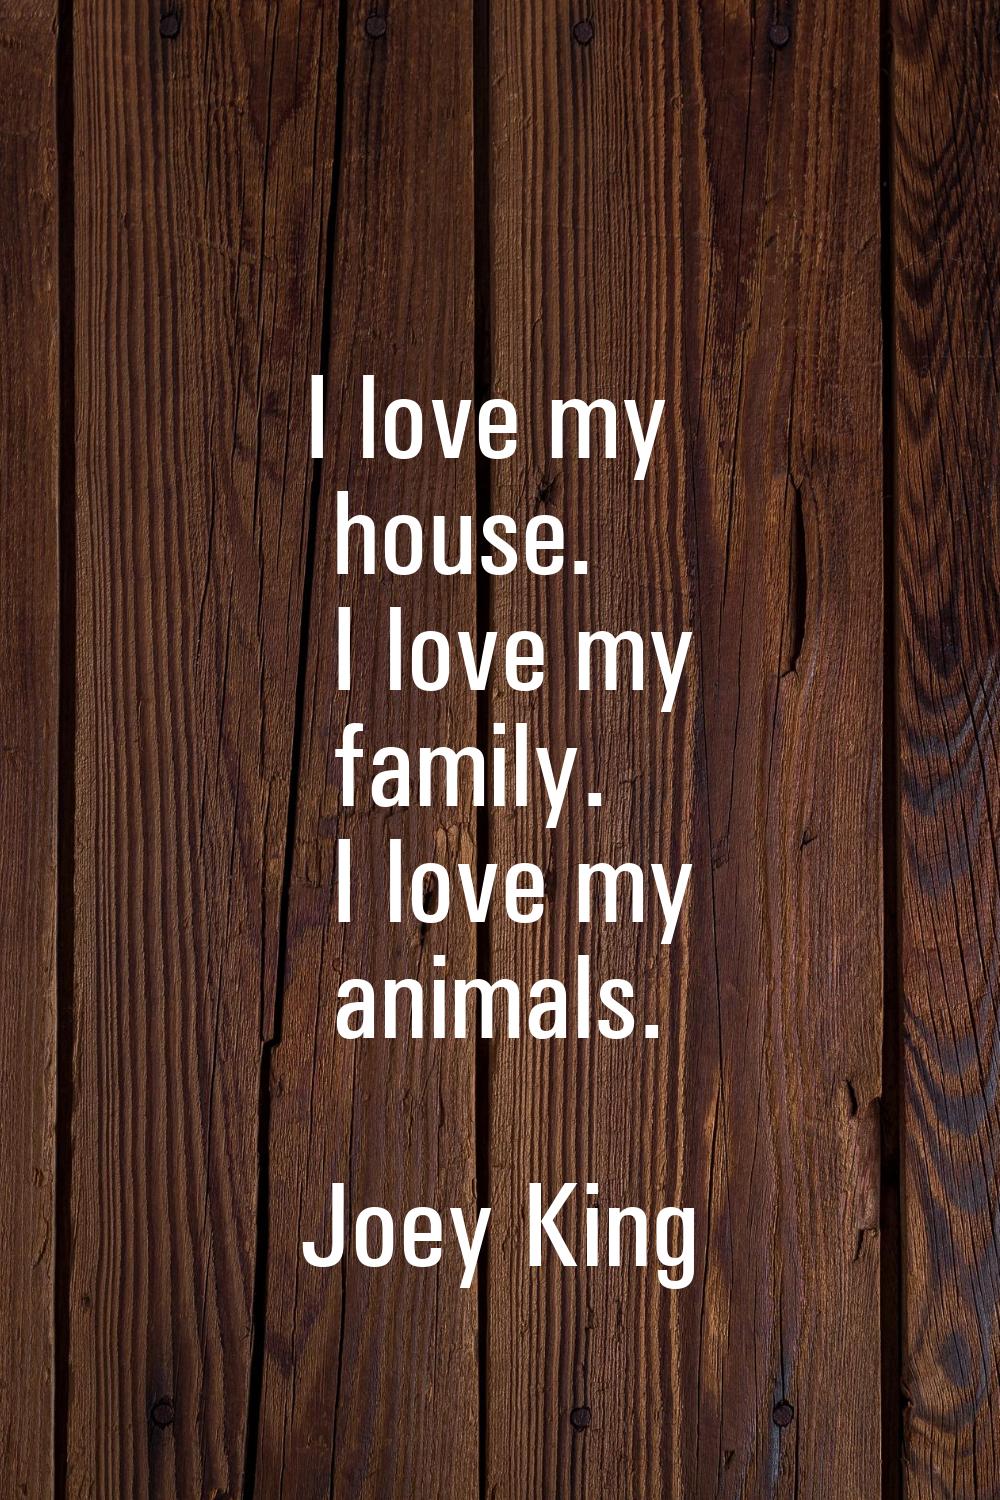 I love my house. I love my family. I love my animals.